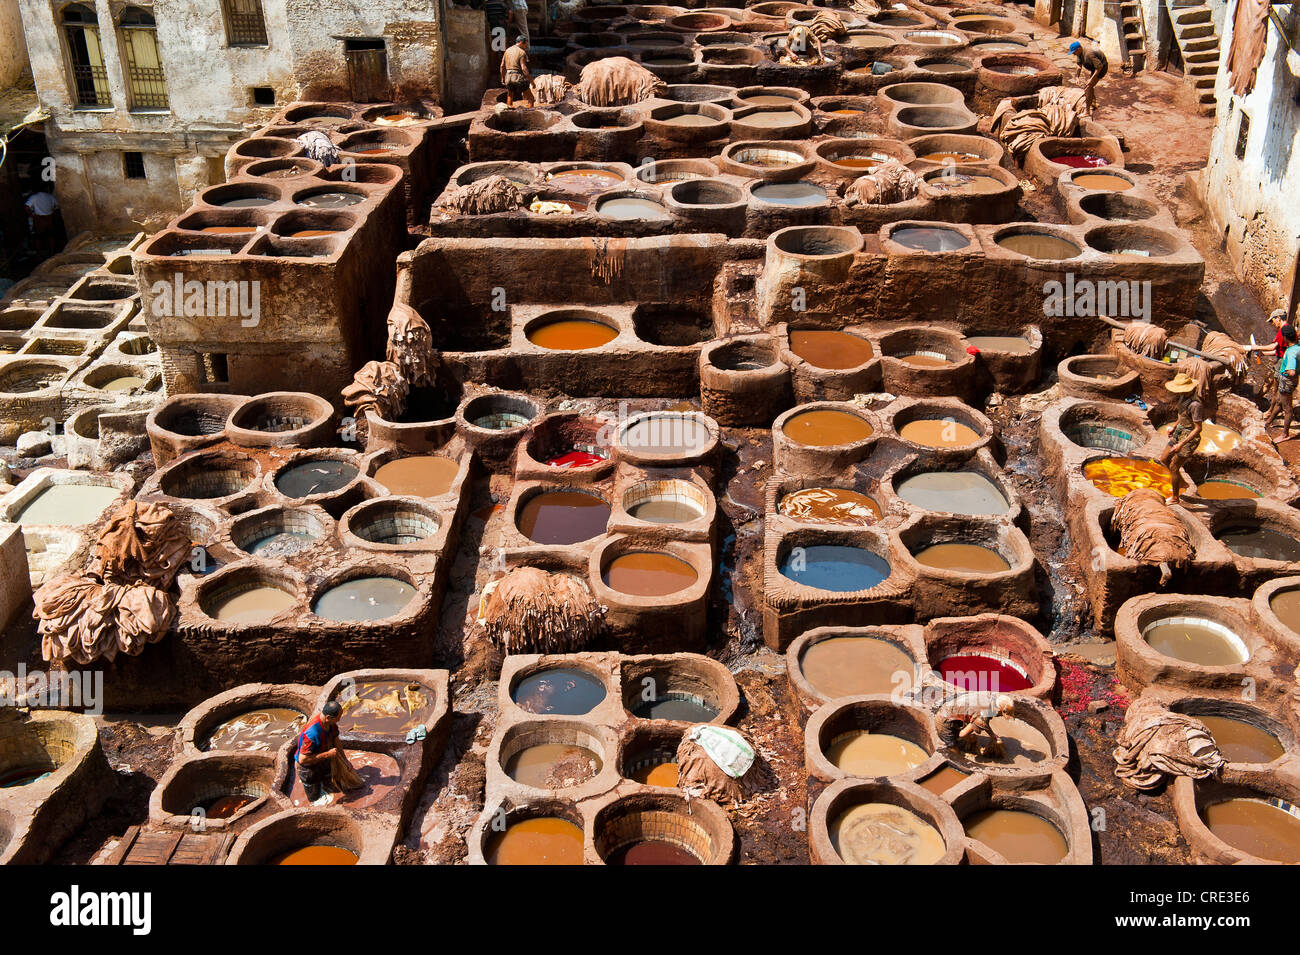 Les tanneries traditionnelles avec cuves de mourir, la vieille ville ou médina de Fès ou Fez, Site du patrimoine mondial de l'UNESCO, le Maroc, l'Afrique Banque D'Images